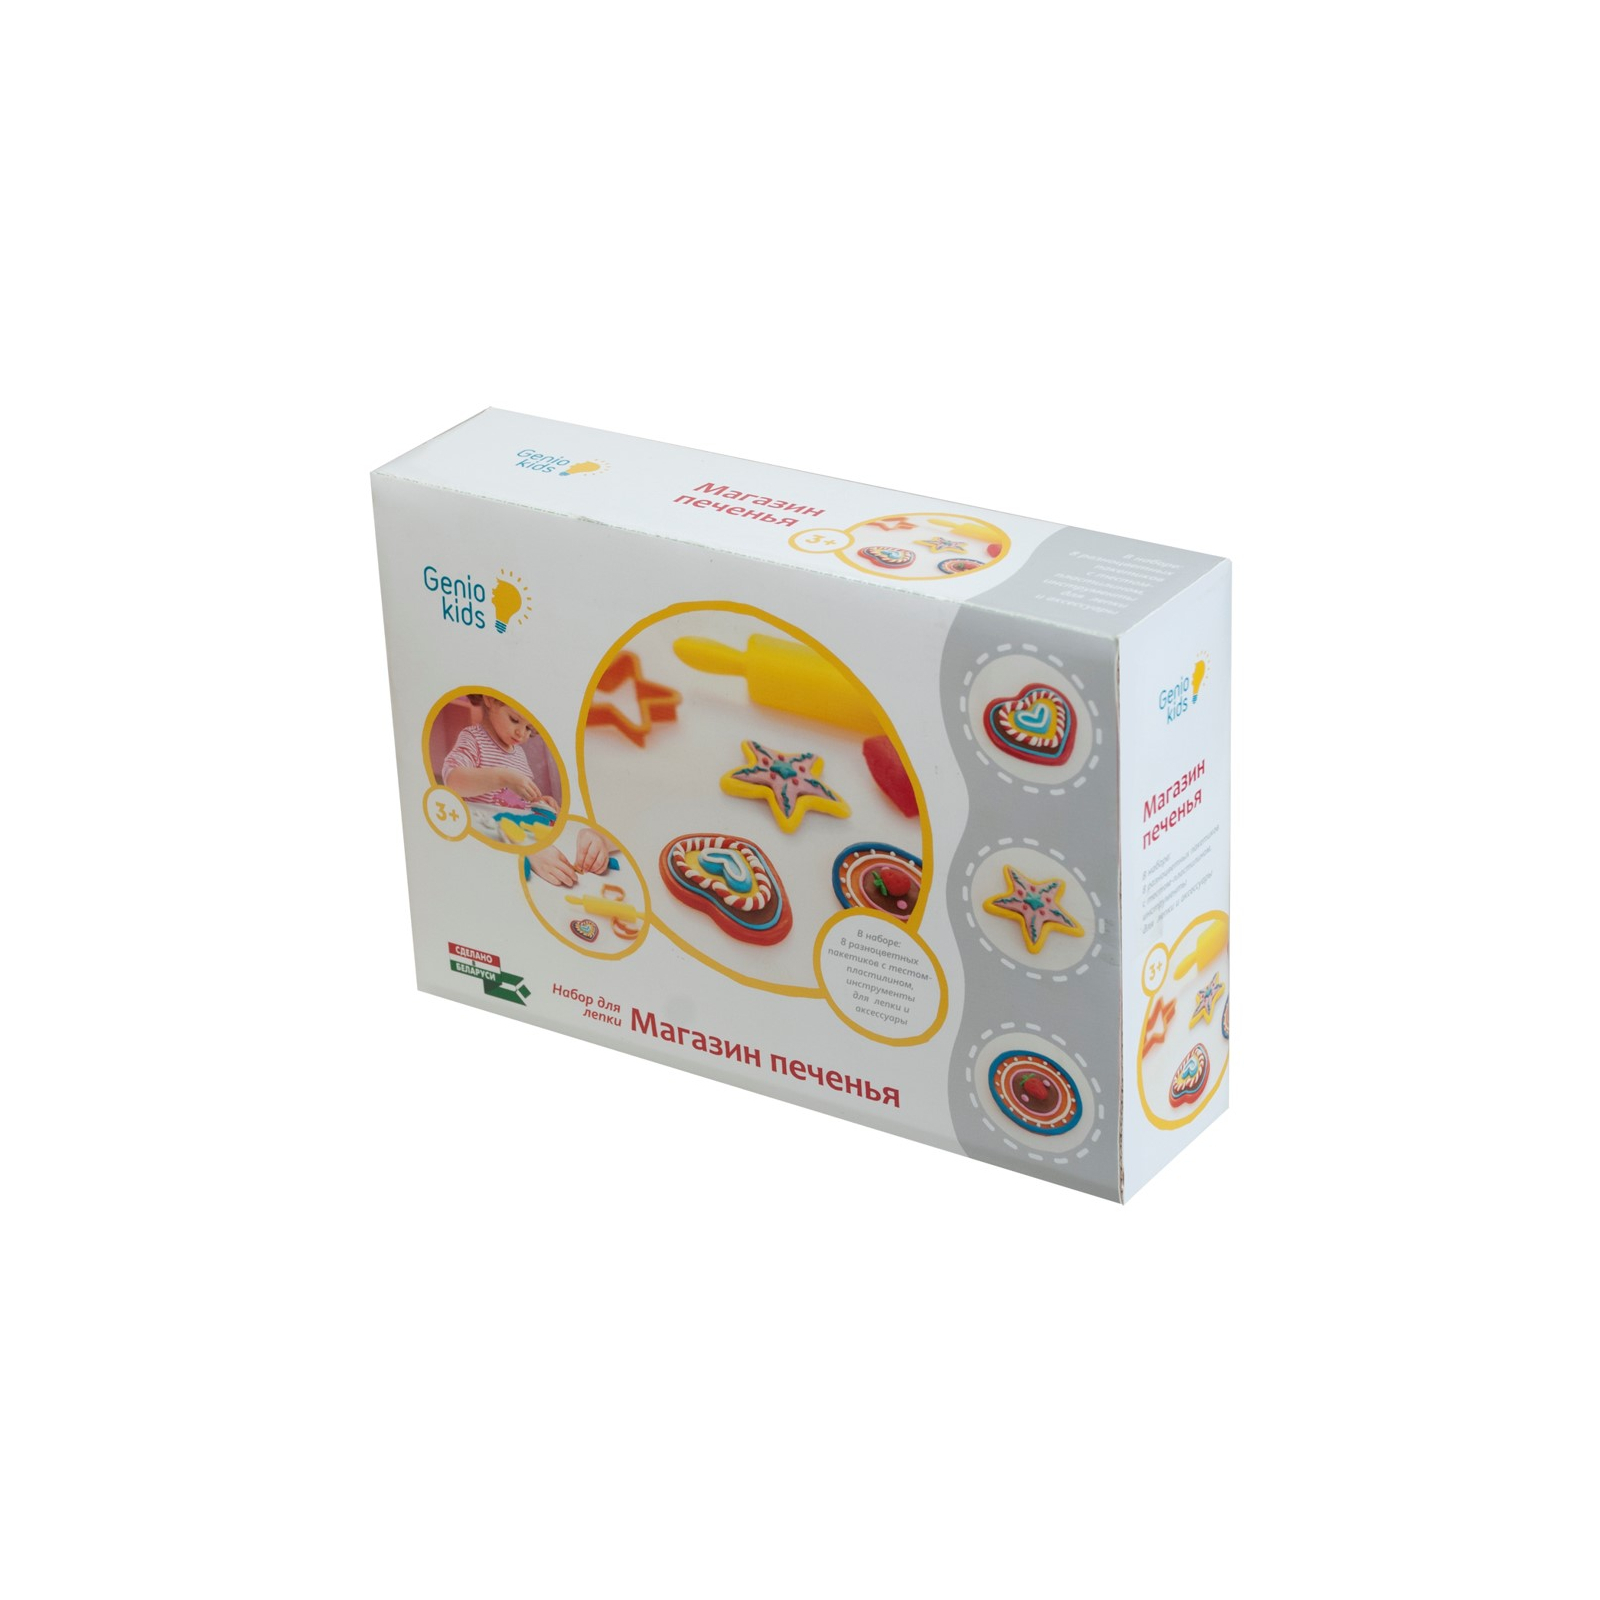 Набор для творчества Genio Kids Магазин печенья (TA1038)